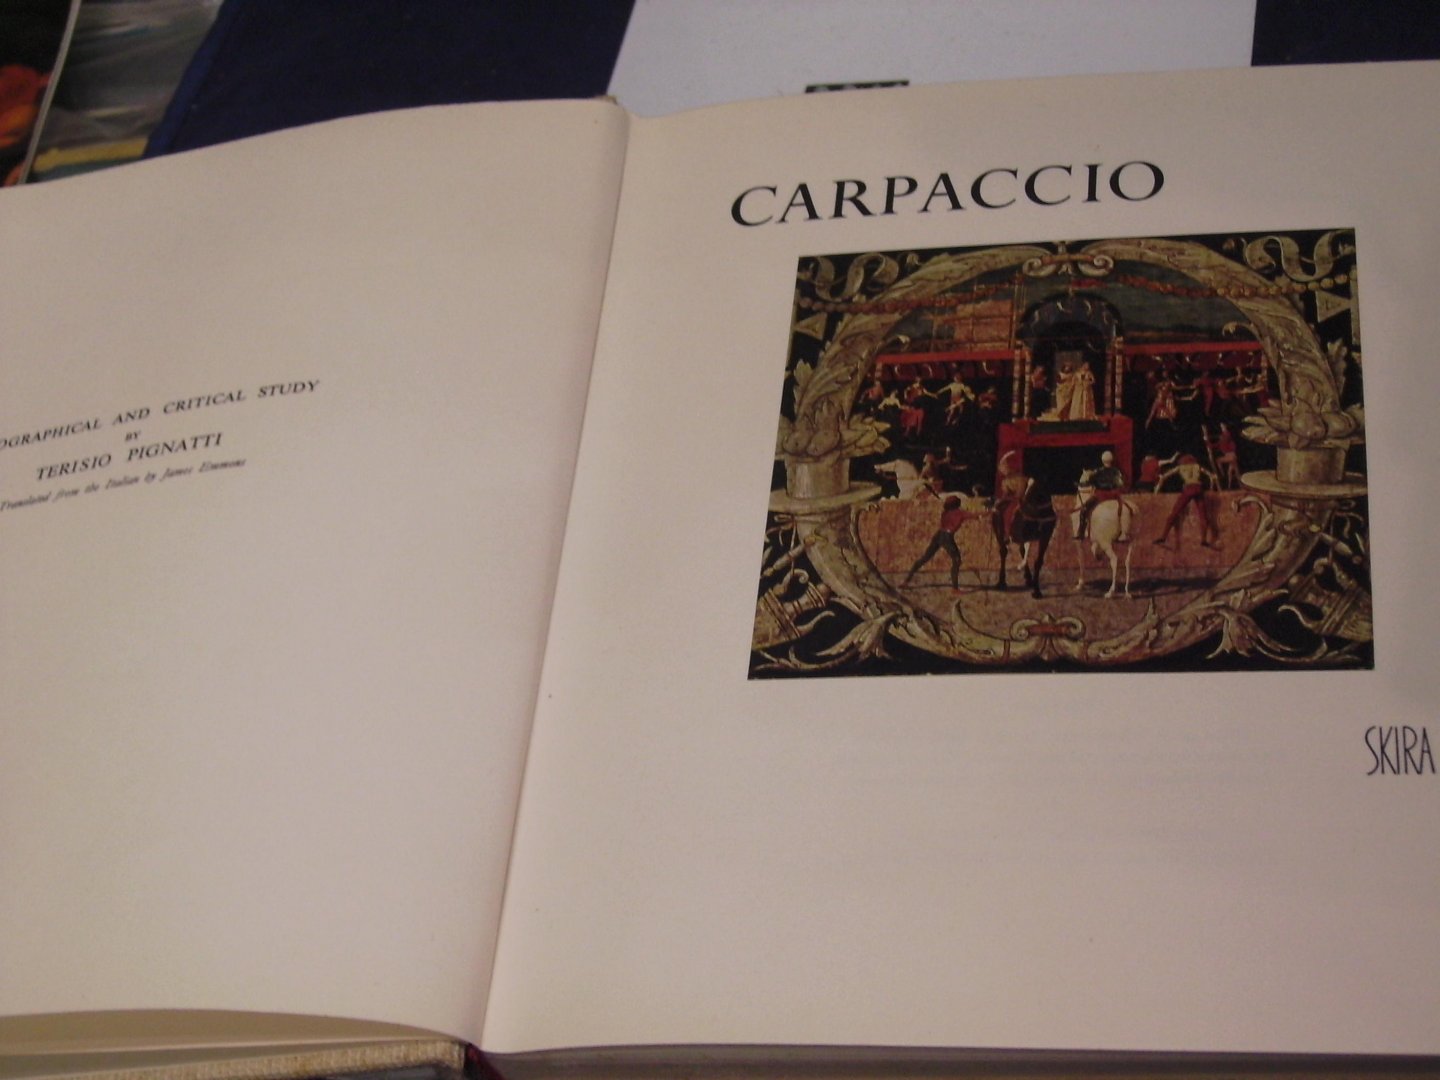 Pignatti, Terisio - Carpaccio, a Biographical and Critical study